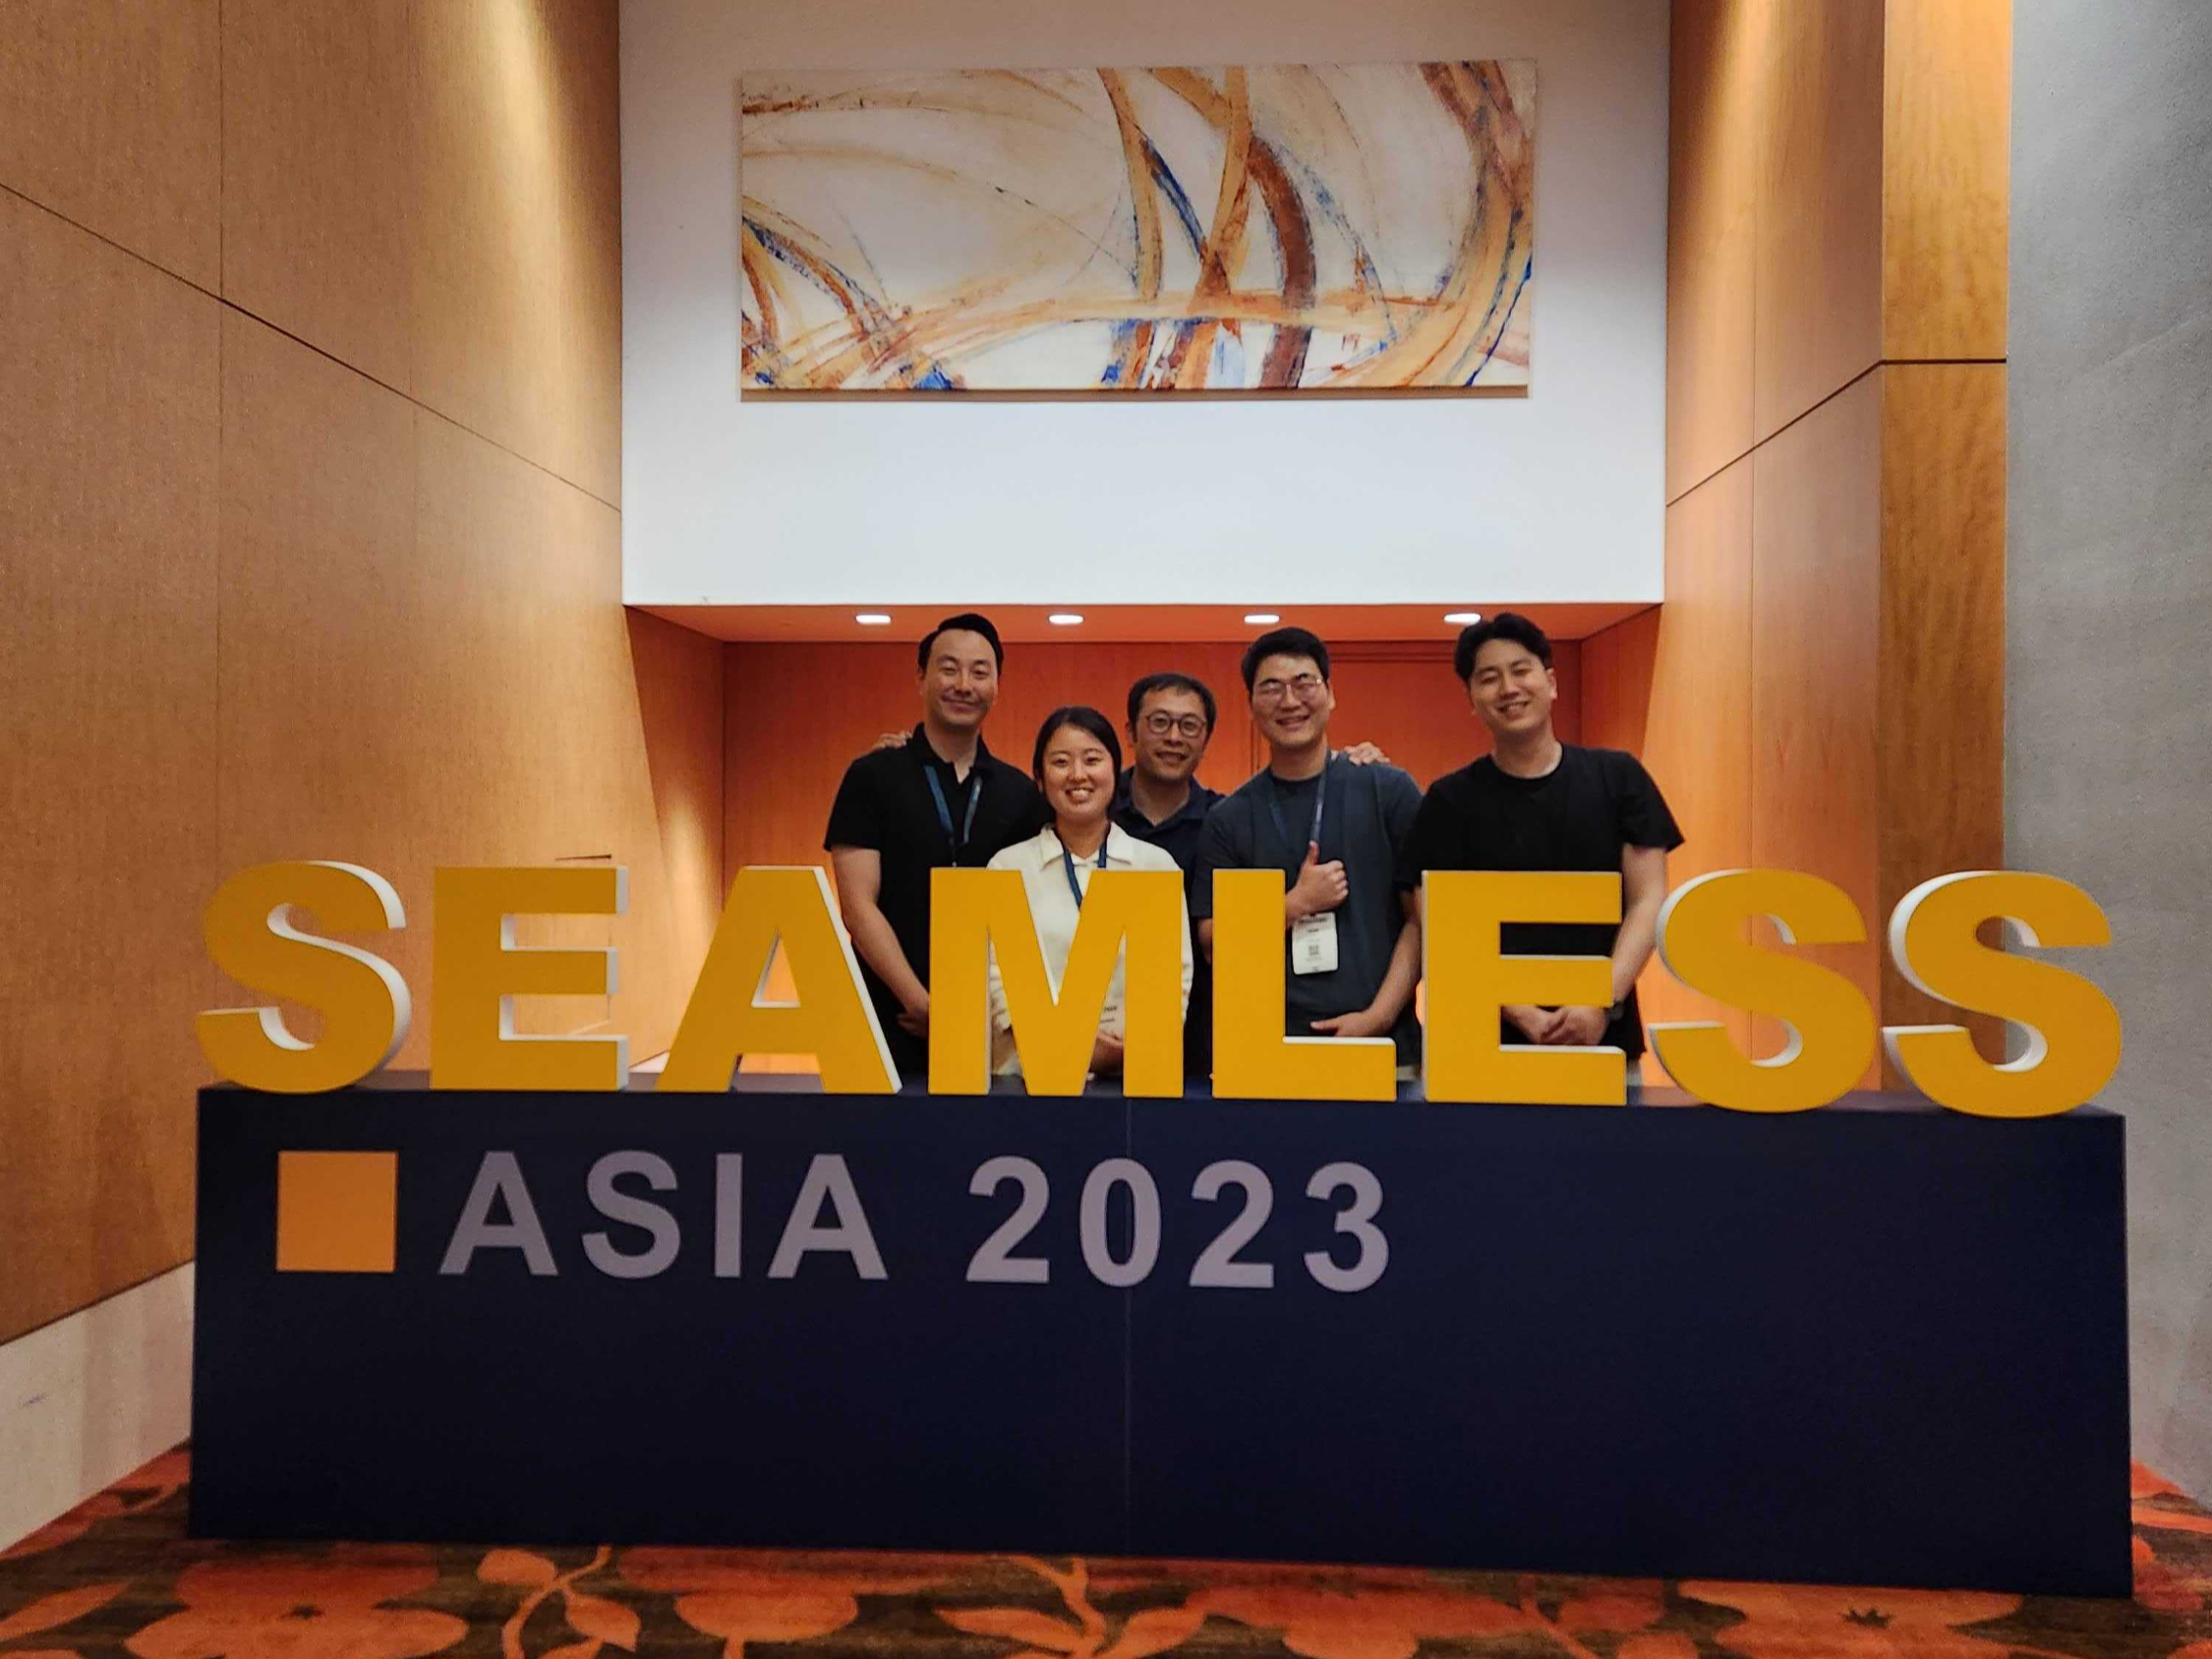 Seamless Asia 2023